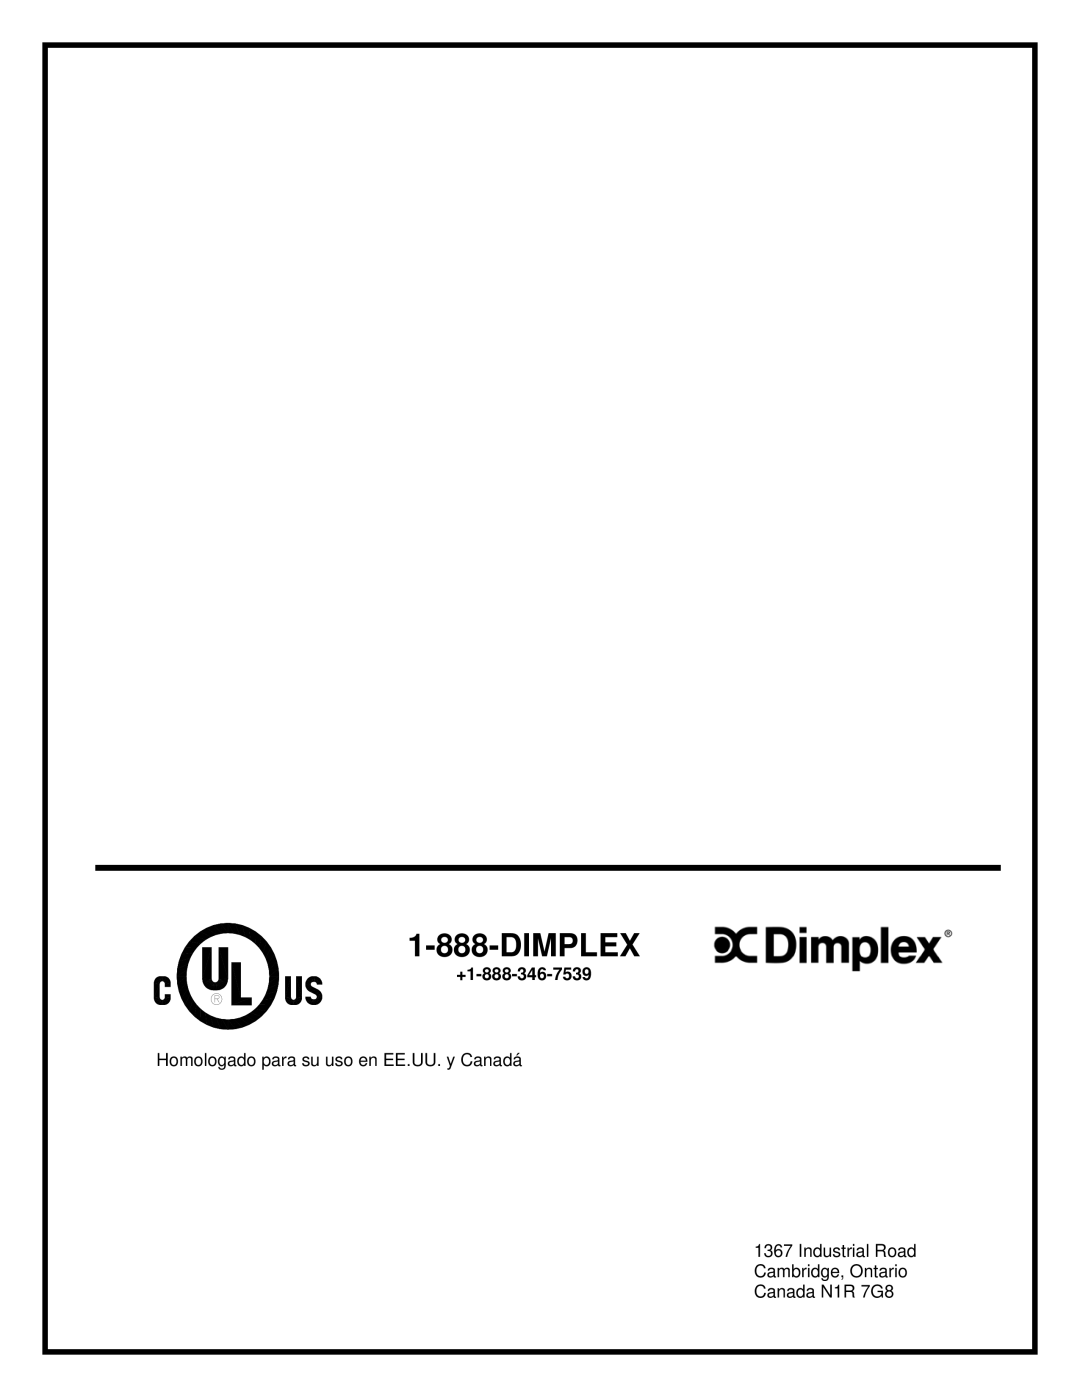 Dimplex BF45ST/DX Dimplex, +1-888-346-7539, Homologado para su uso en EE.UU. y Canadá, Industrial Road Cambridge, Ontario 